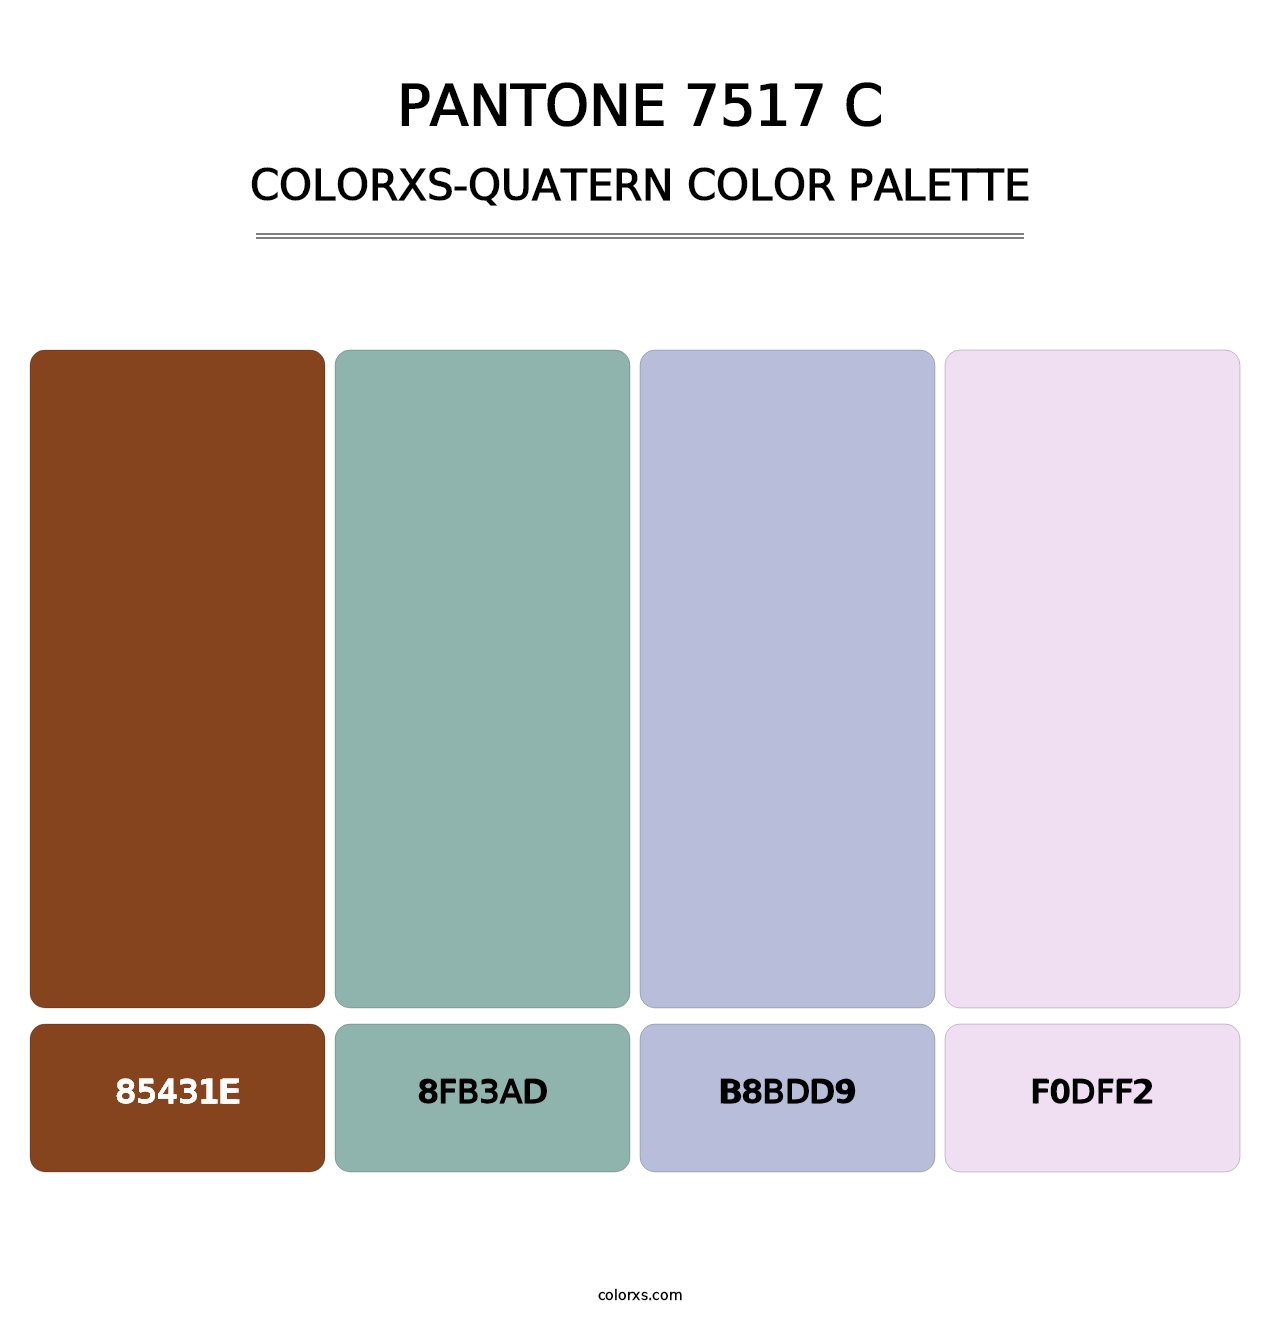 PANTONE 7517 C - Colorxs Quatern Palette